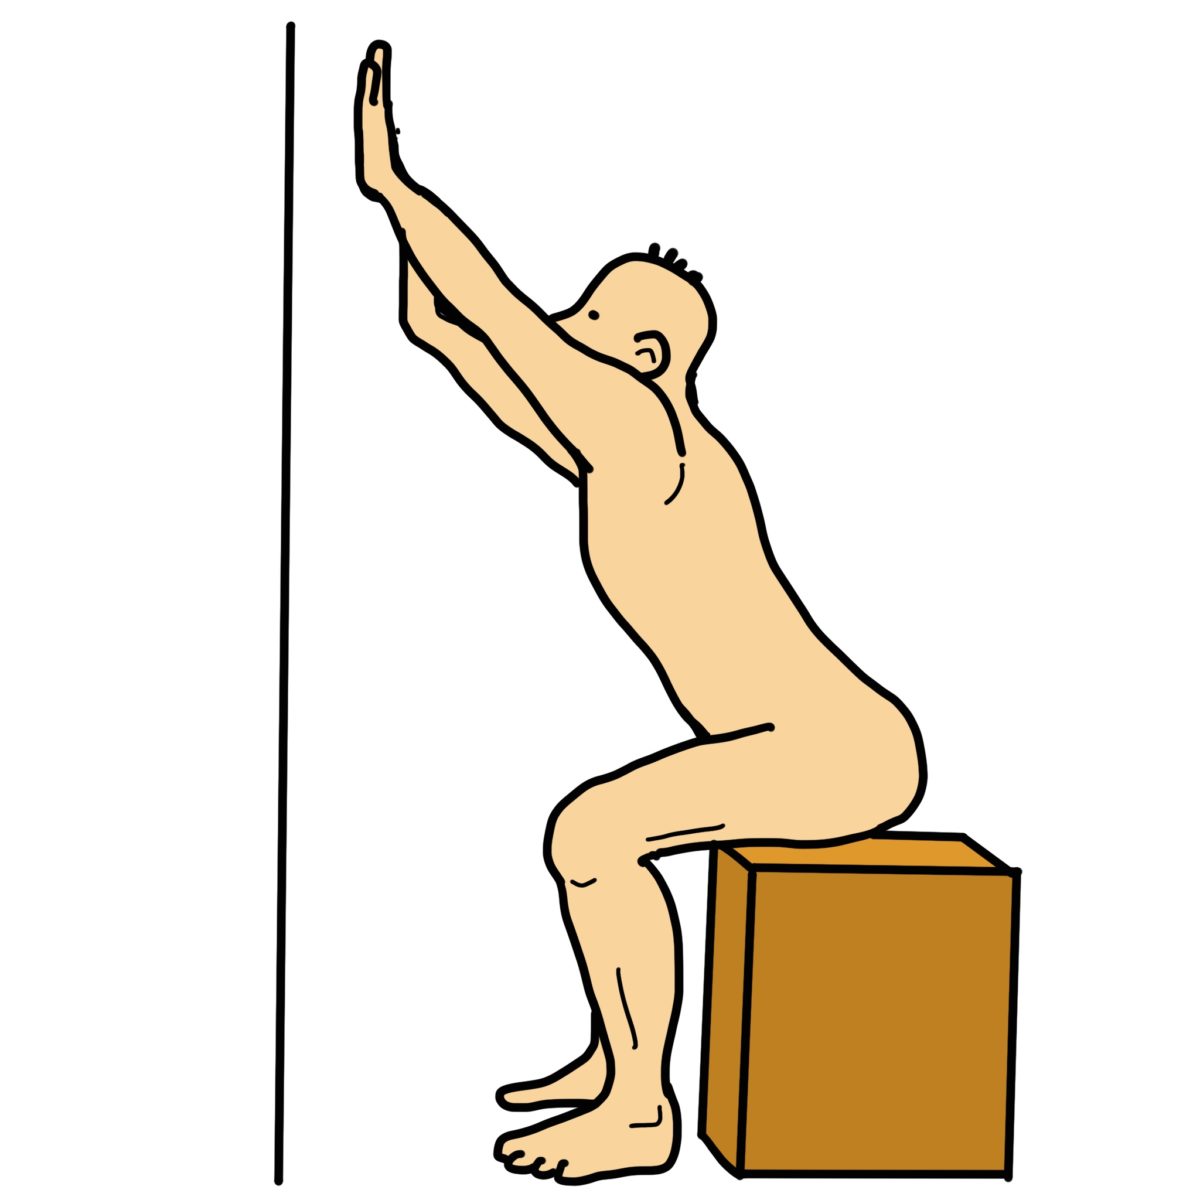 壁を利用した体幹の伸展ストレッチ（座位・立位バージョン）